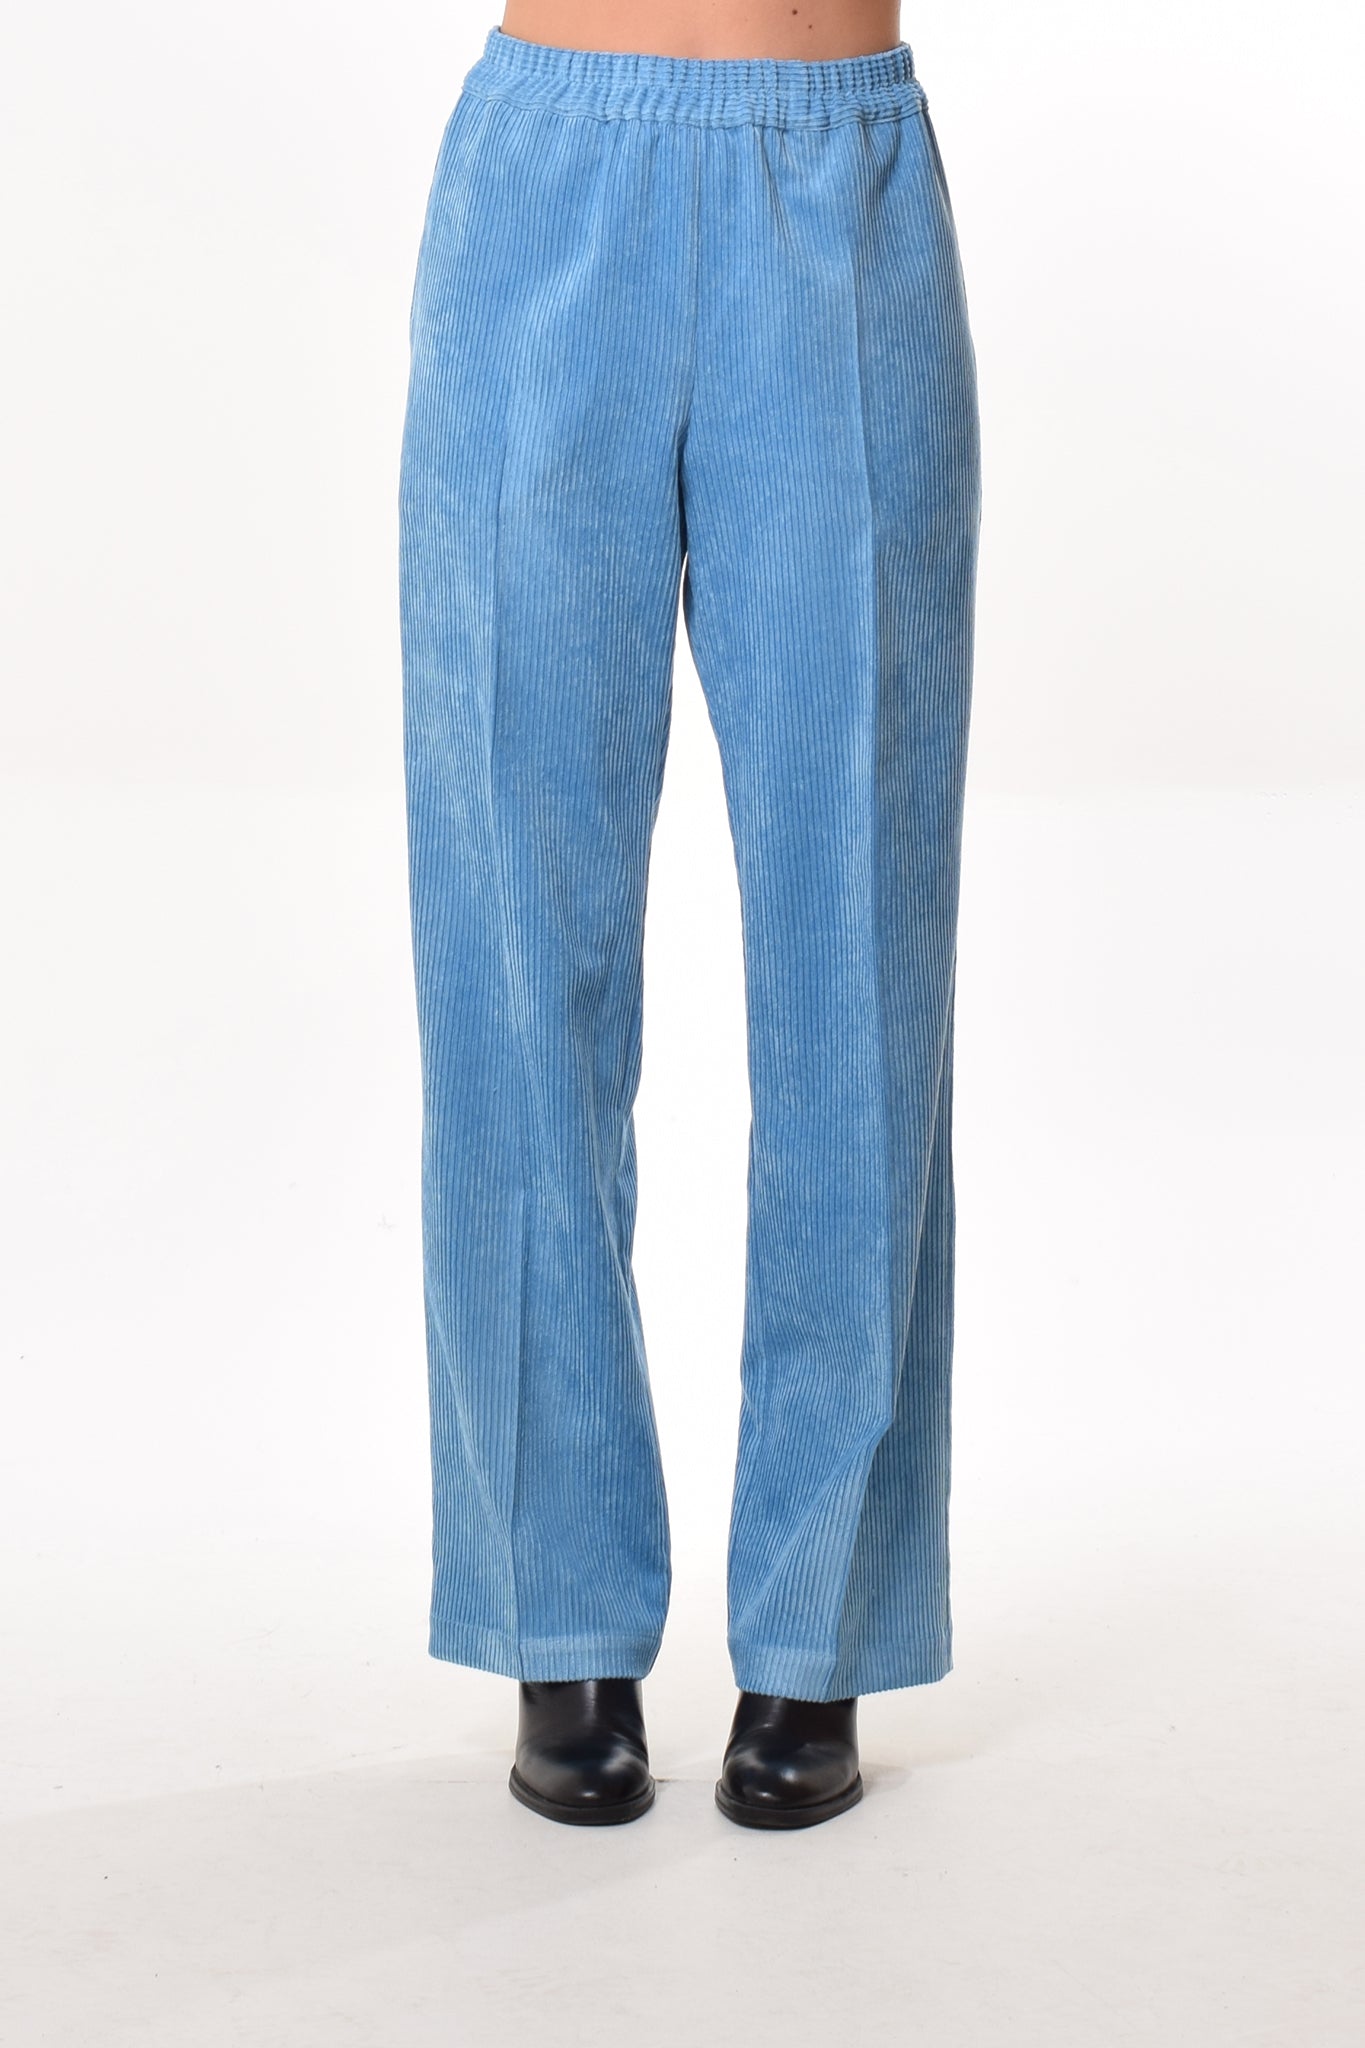 Cas trousers in Bleu (corduroy)